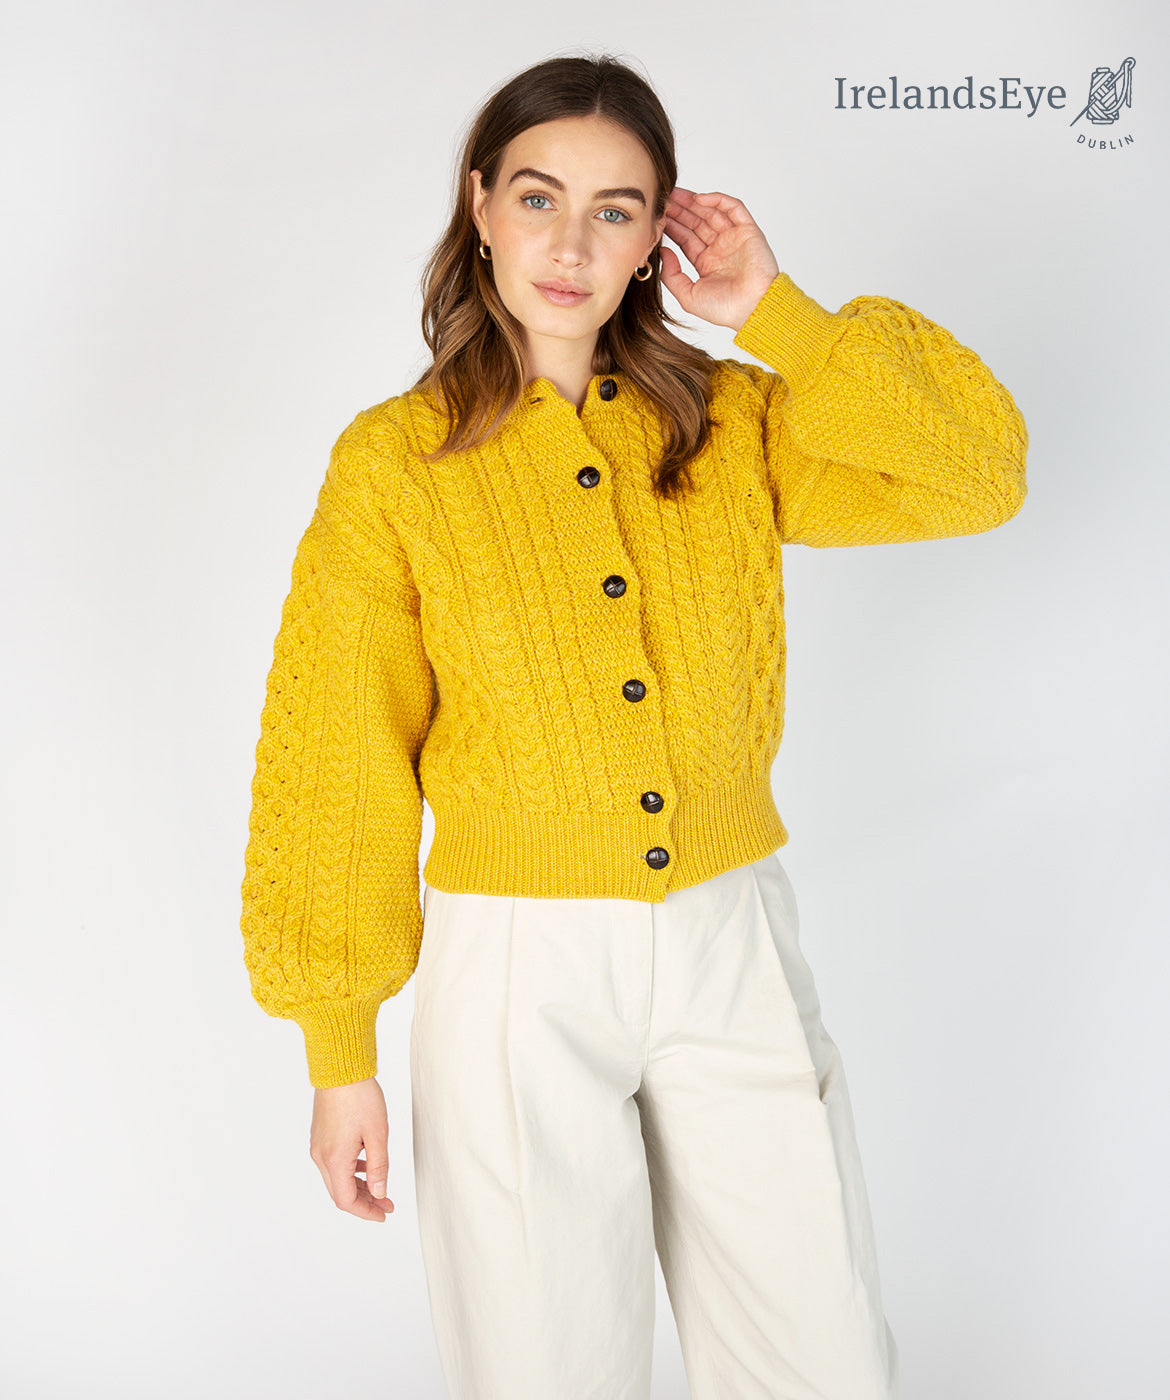 IrelandsEye Knitwear 'Sunflower' Cropped Aran Cardigan